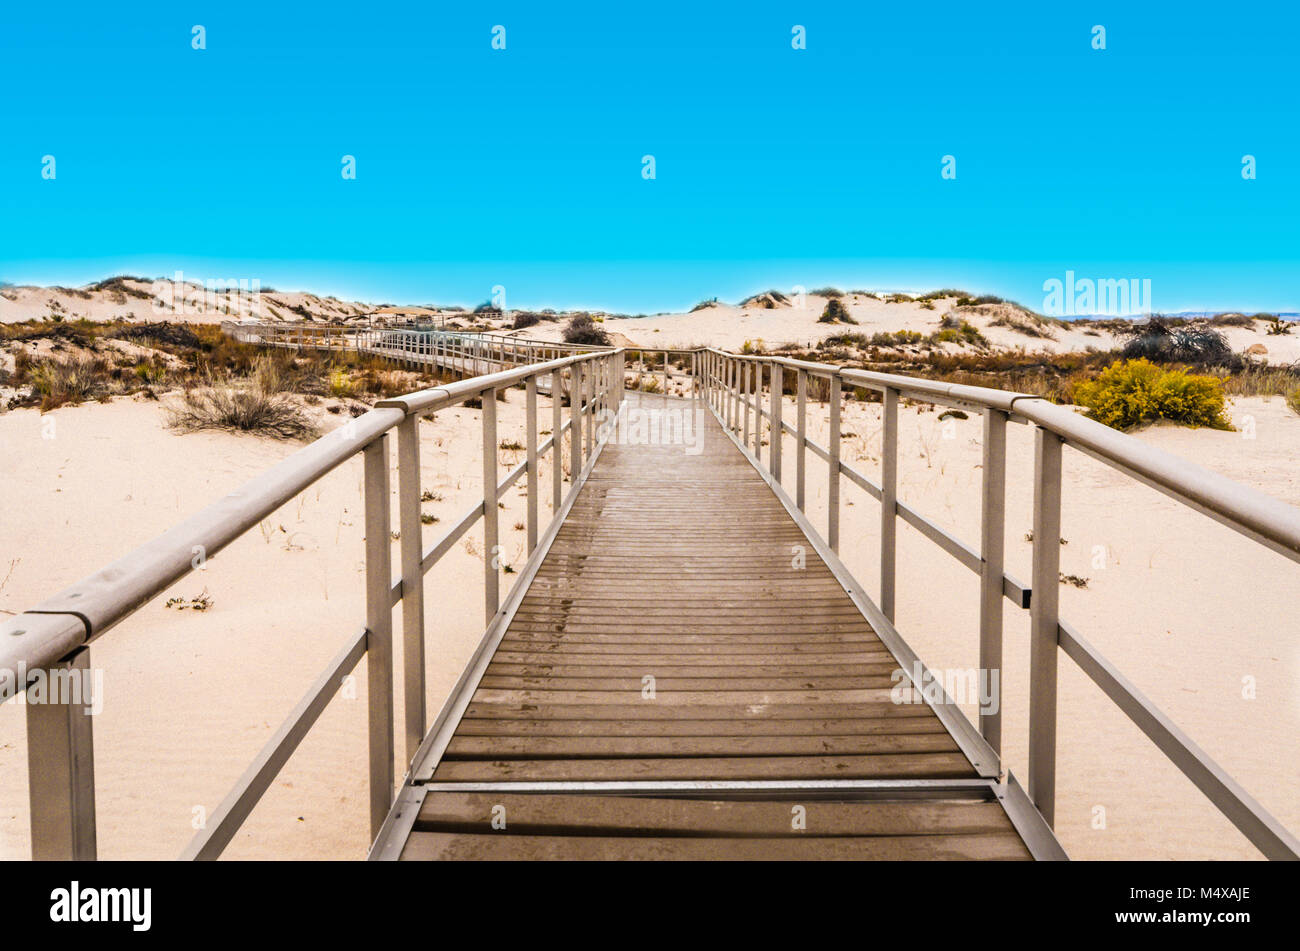 Interdune Promenade de bois, un trottoir surélevé à travers dunes de sable blanc du parc national. Banque D'Images